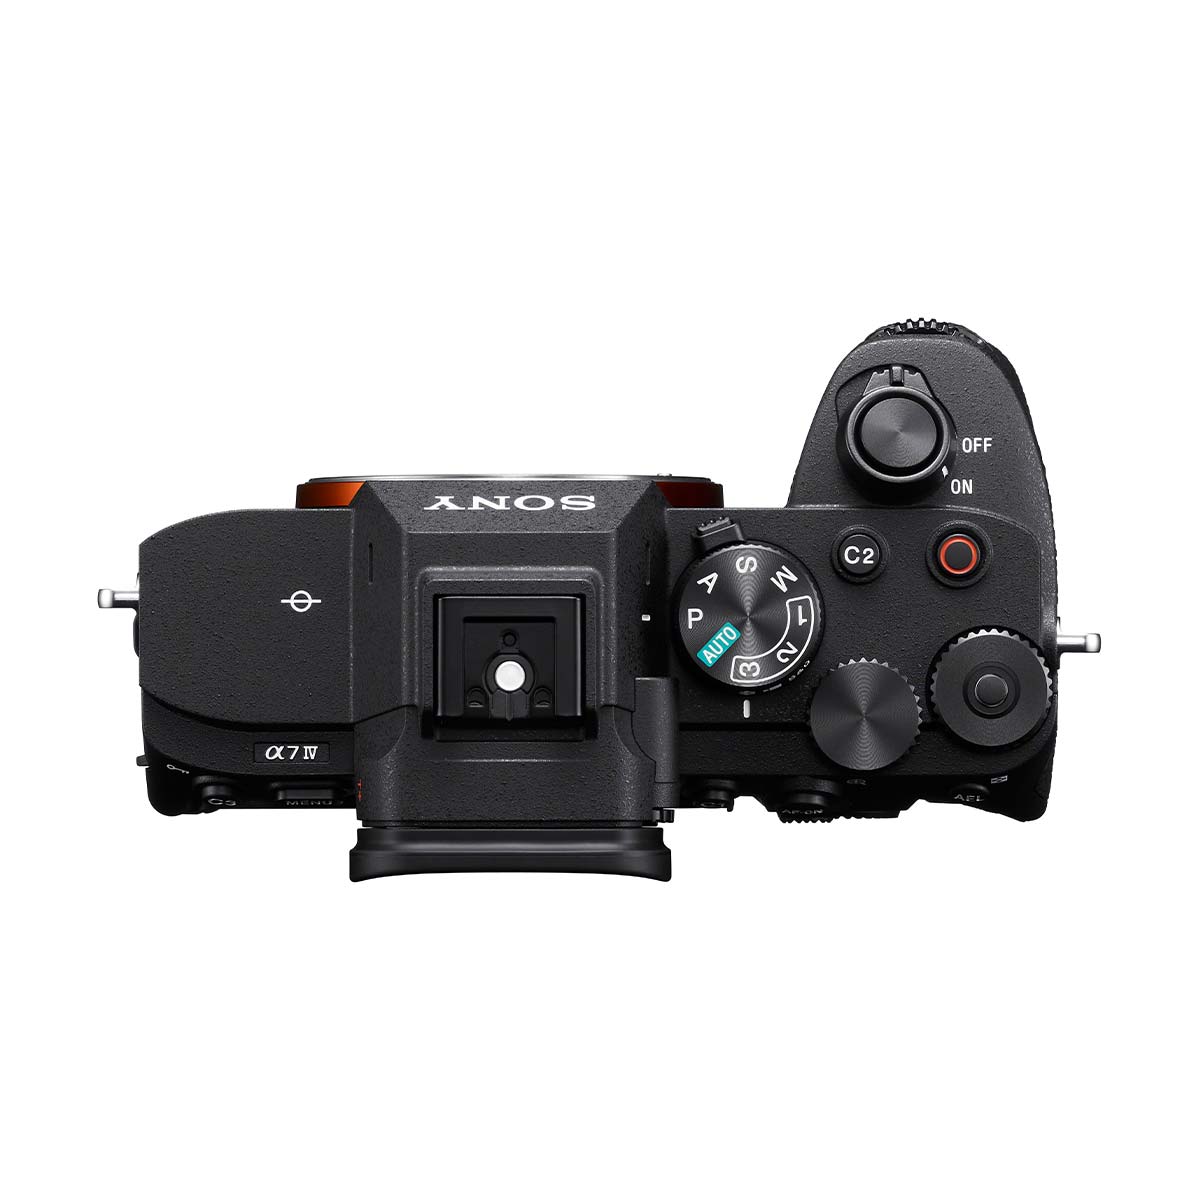 Sony Alpha a7 IV with FE 28-70mm f3.5-5.6 OSS Lens Kit